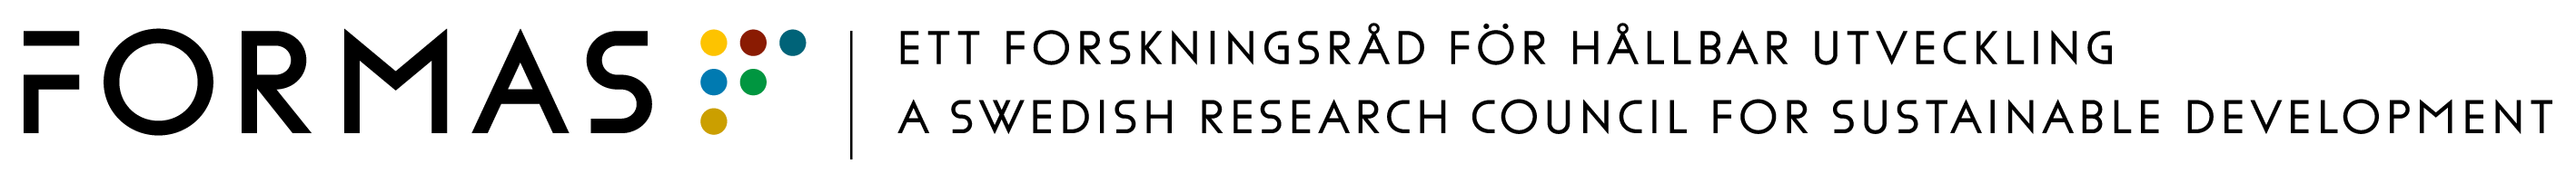 Formas logotype